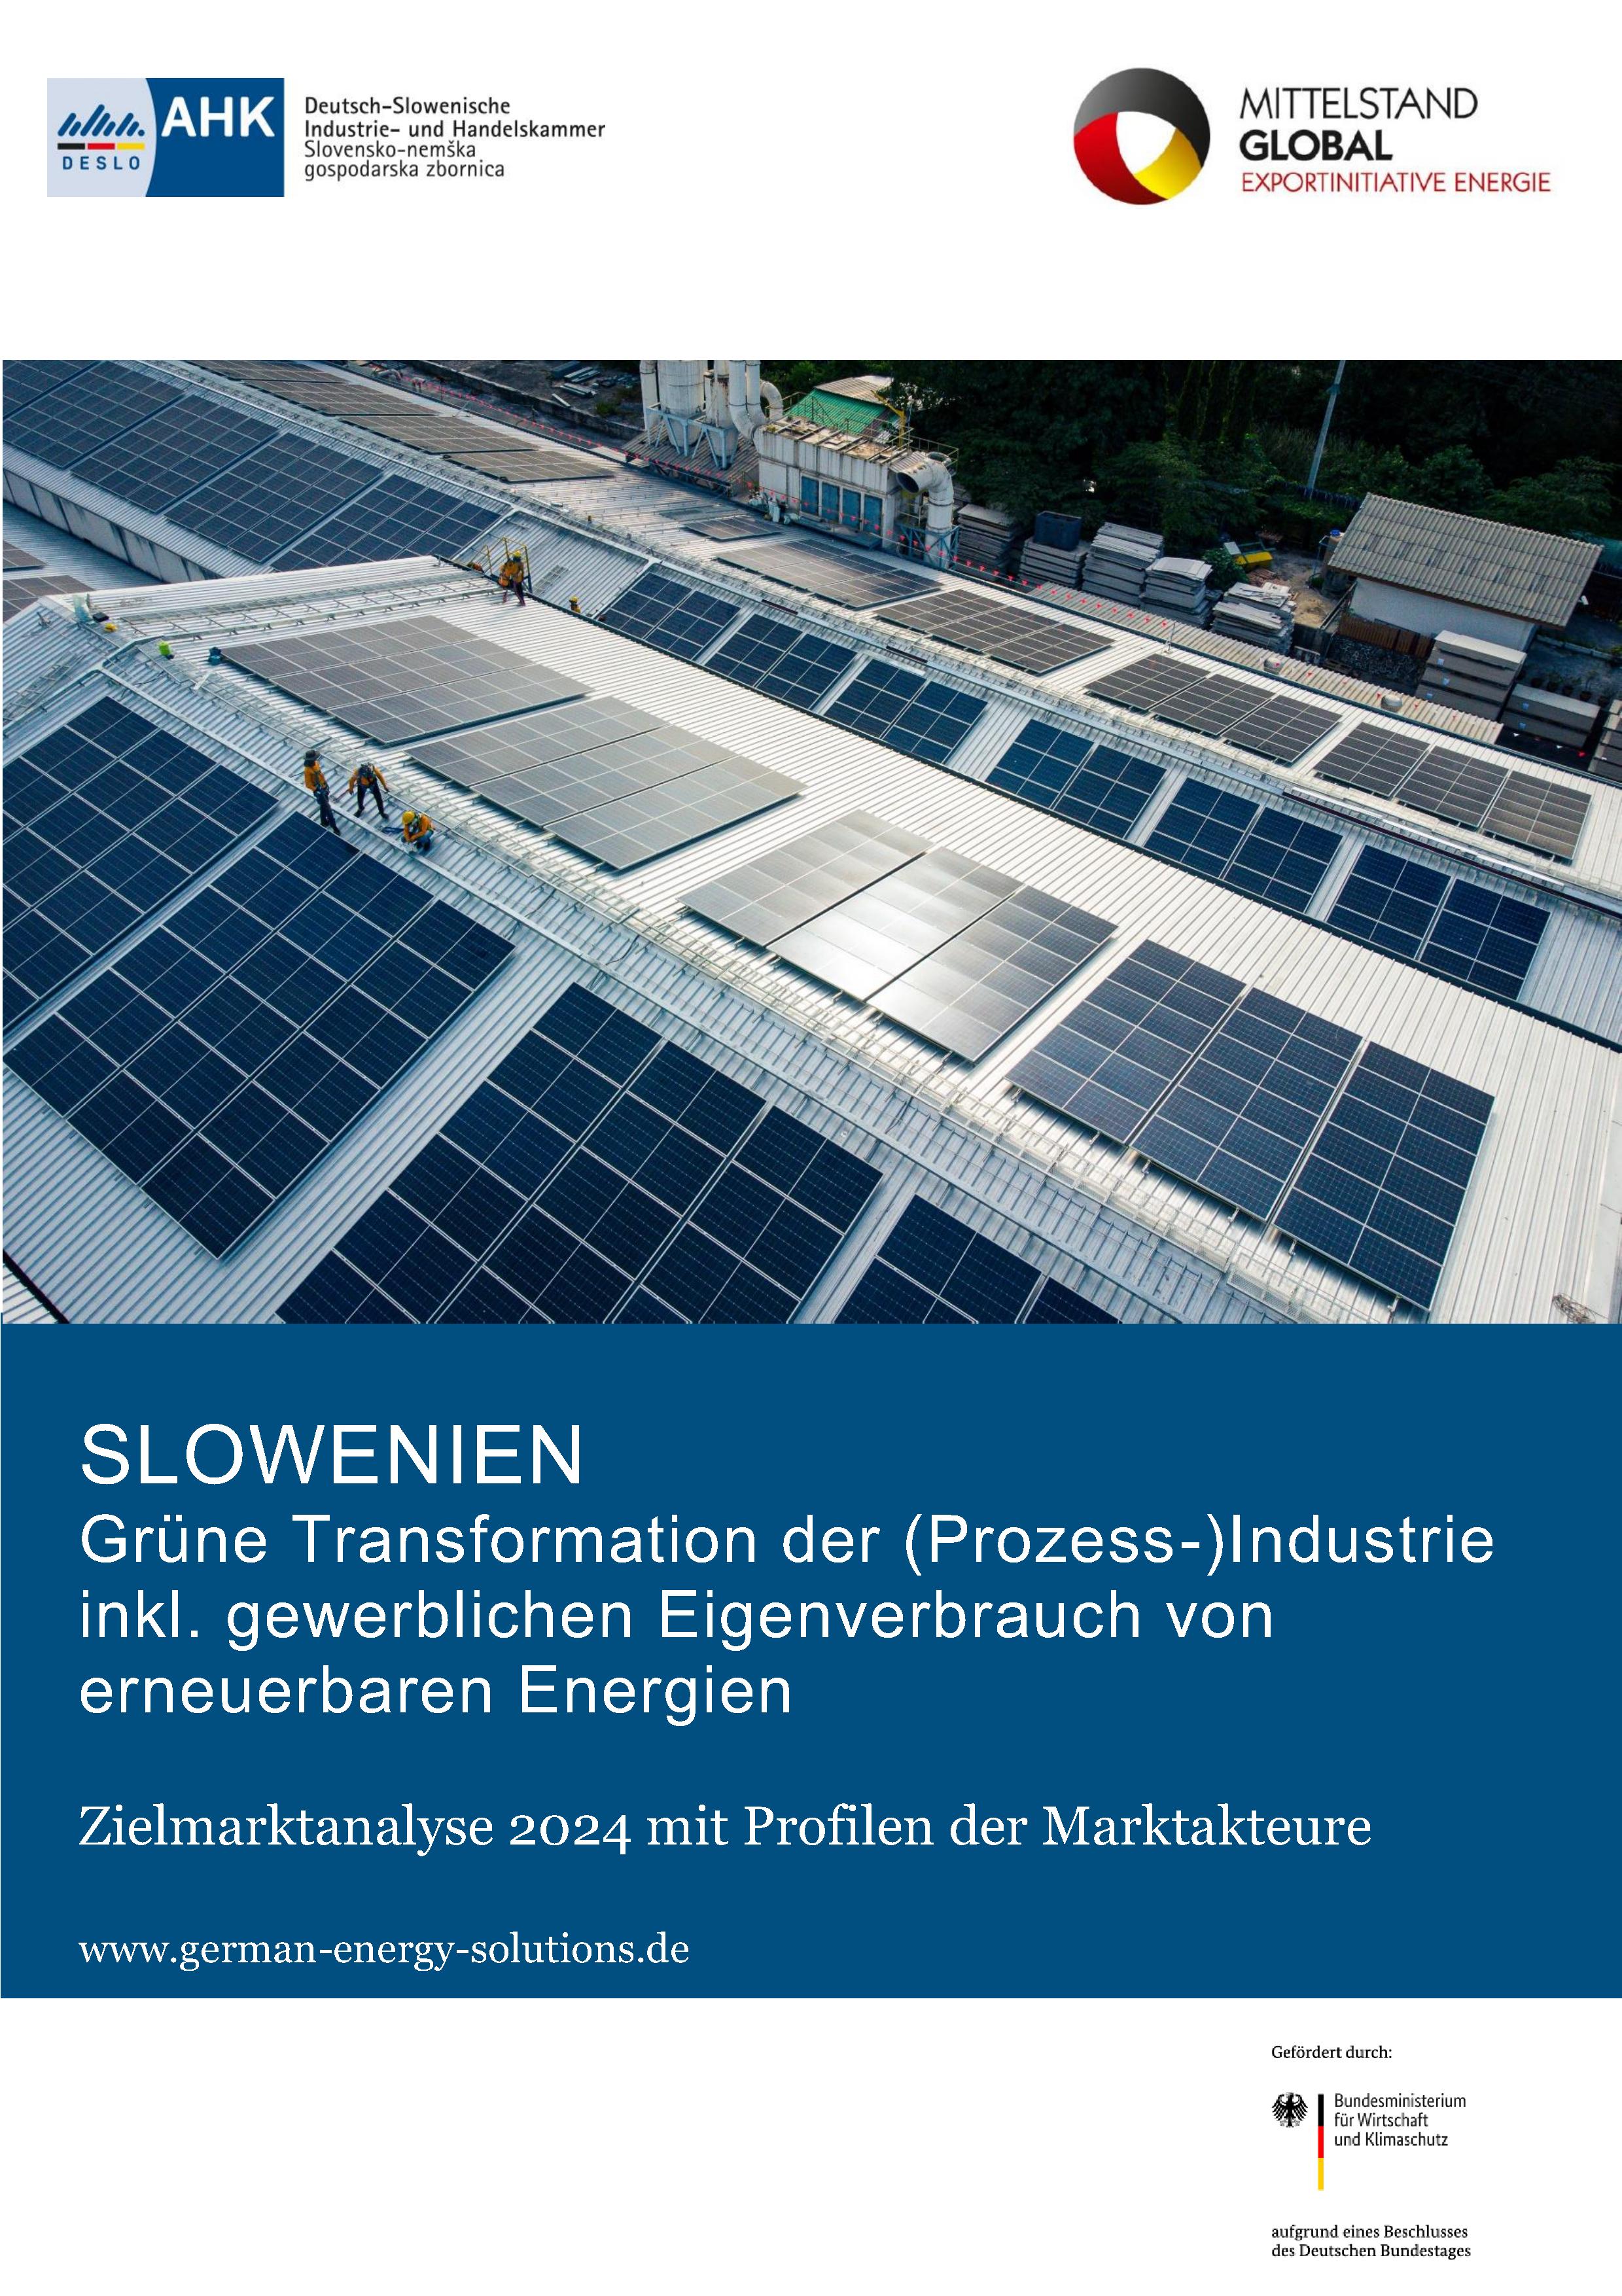 Grüne Transformation der (Prozess-)Industrie in Slowenien